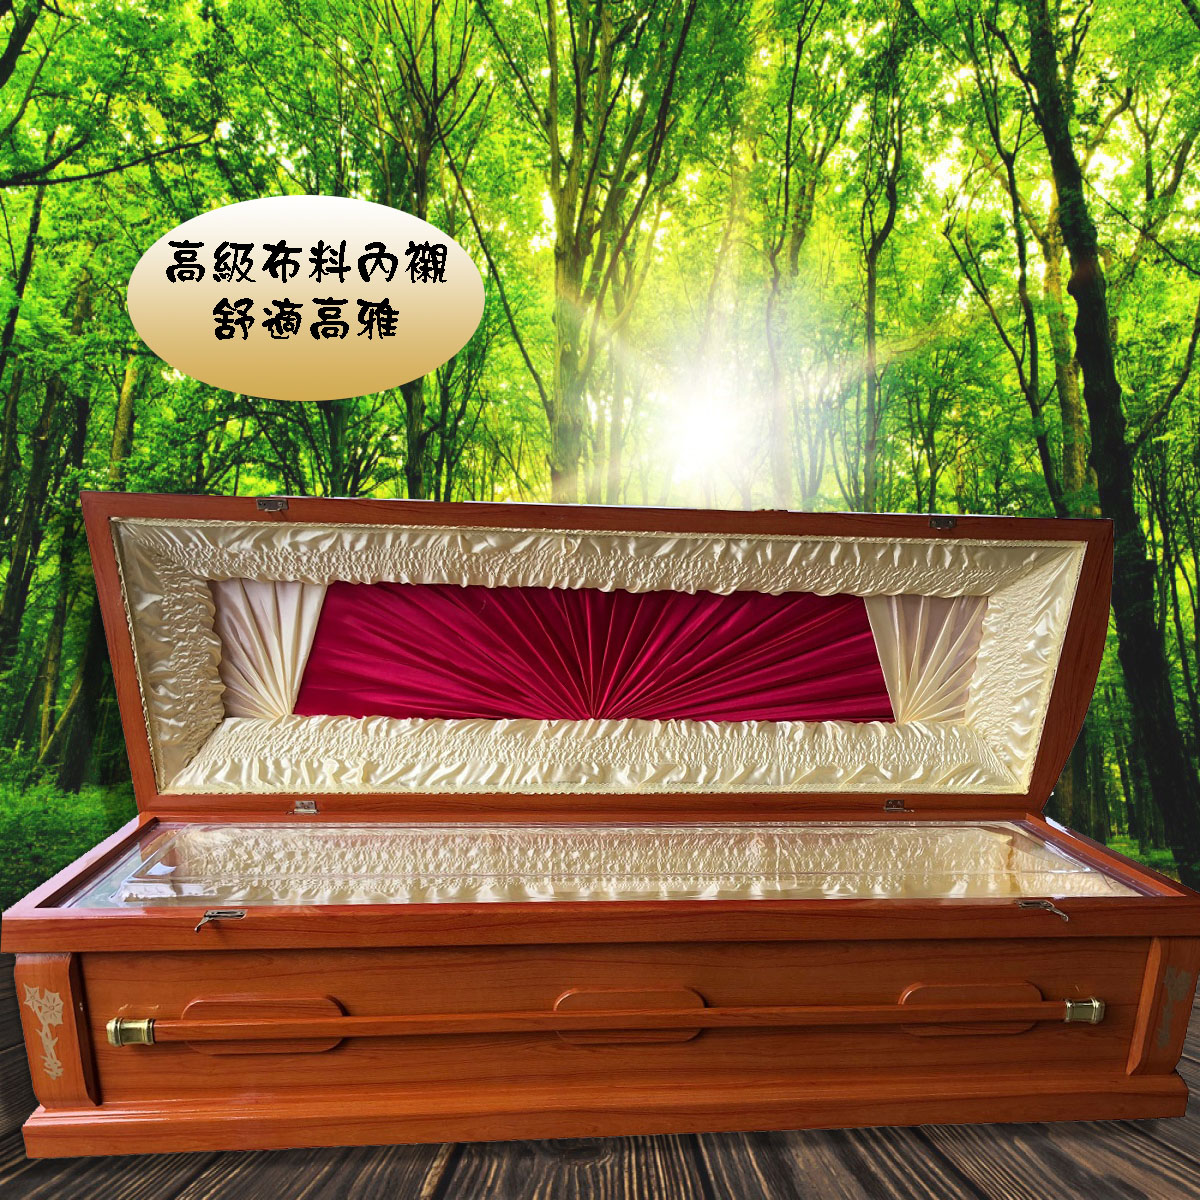 【打桶】火化平蓋原木色扶手棺2.2尺